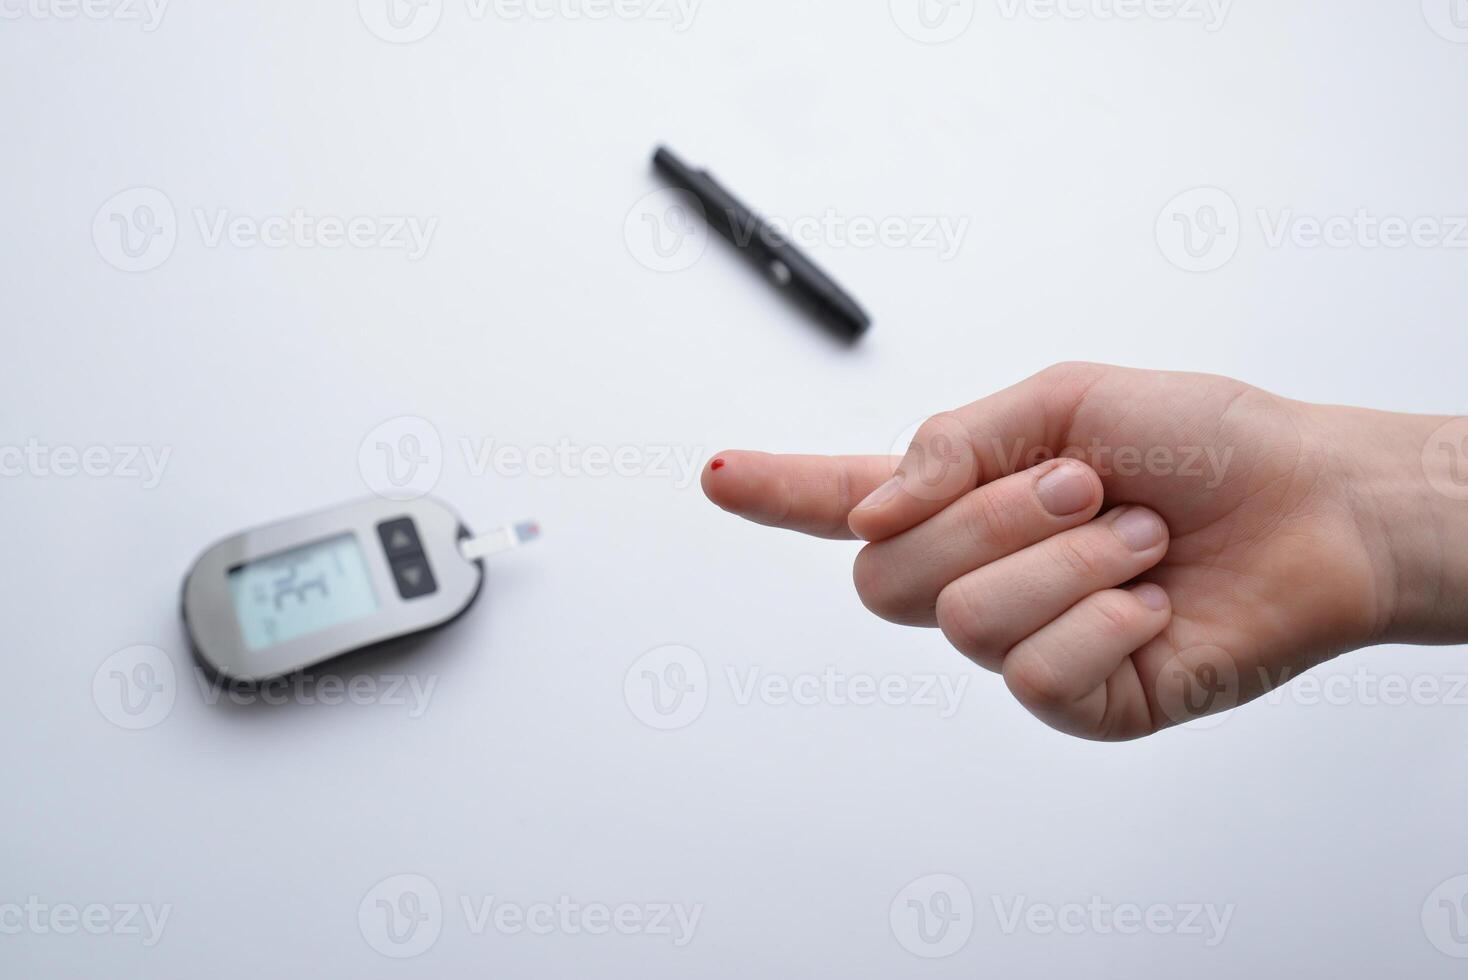 låg blod glukos detekterad efter testning med remsa enhet och små blod prov. illustrerar hälsa övervakning och diabetes förvaltning foto